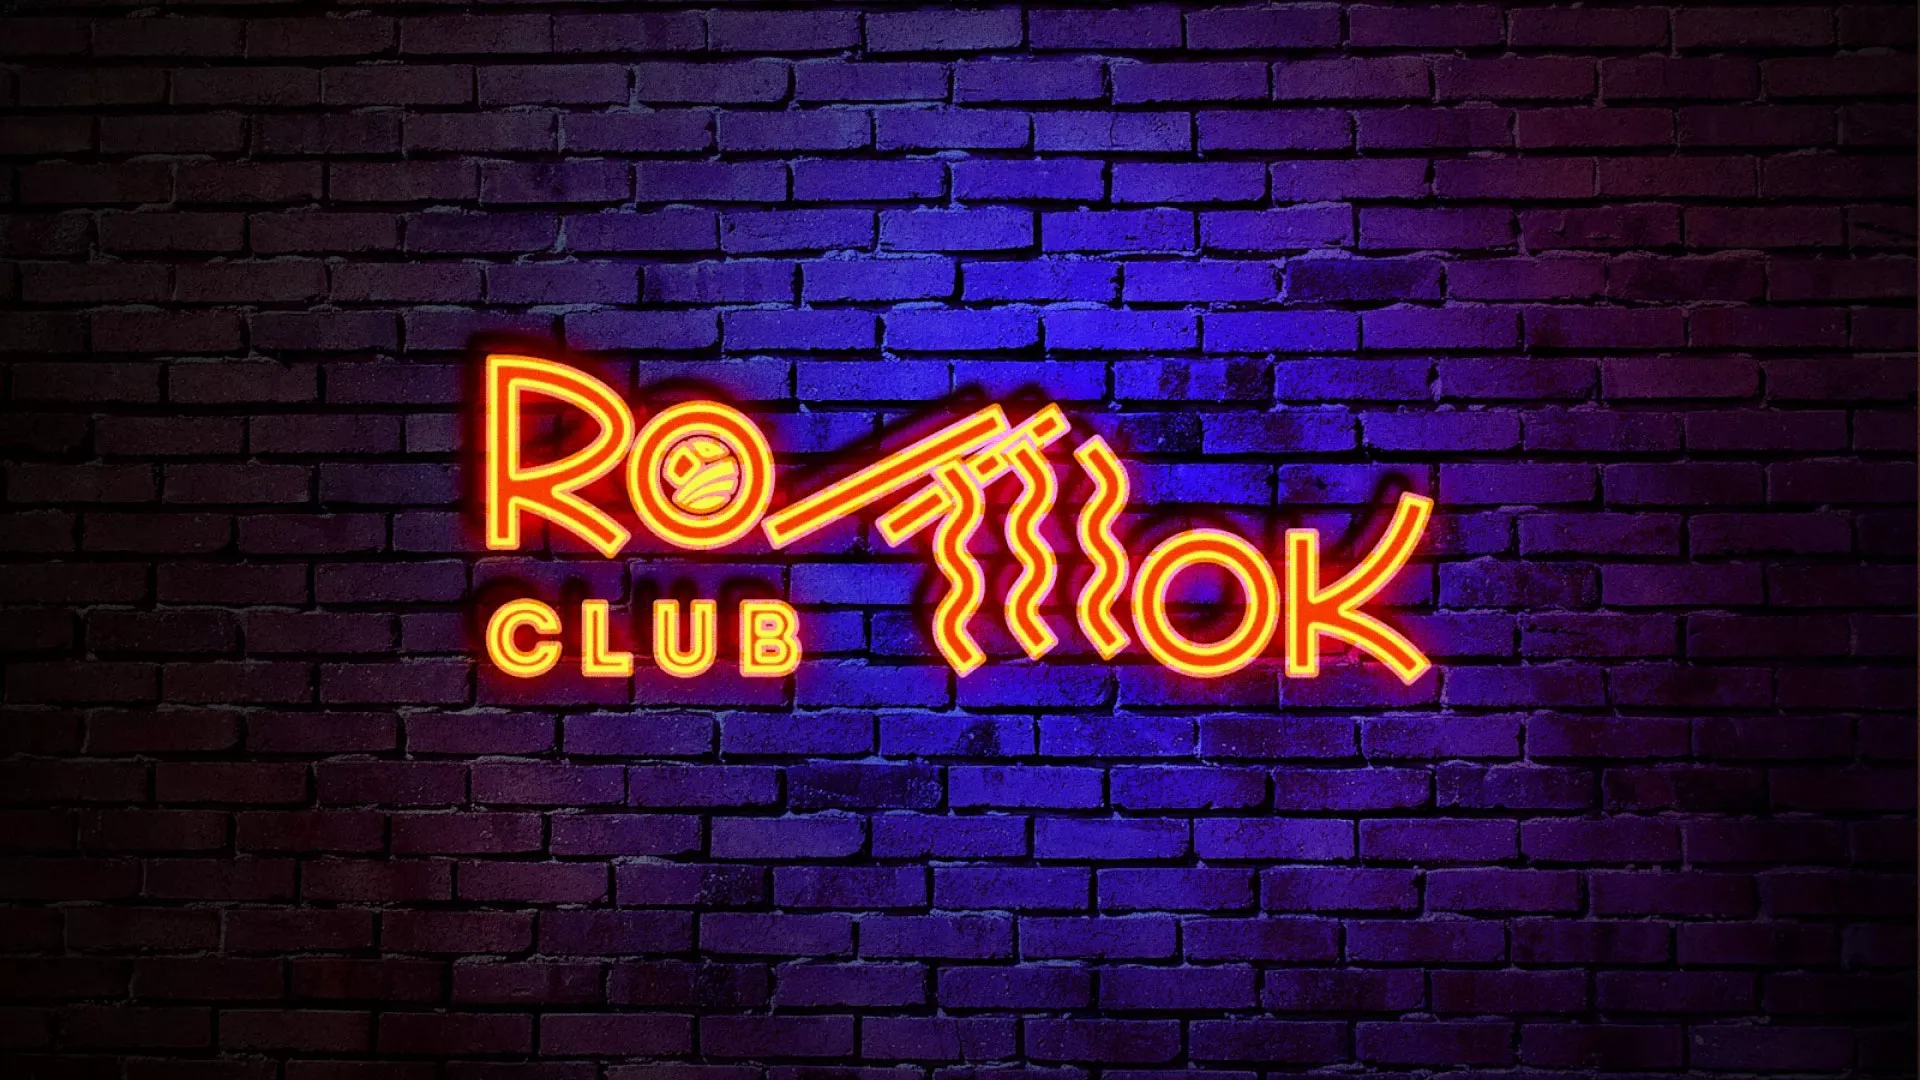 Разработка интерьерной вывески суши-бара «Roll Wok Club» в Малоархангельске